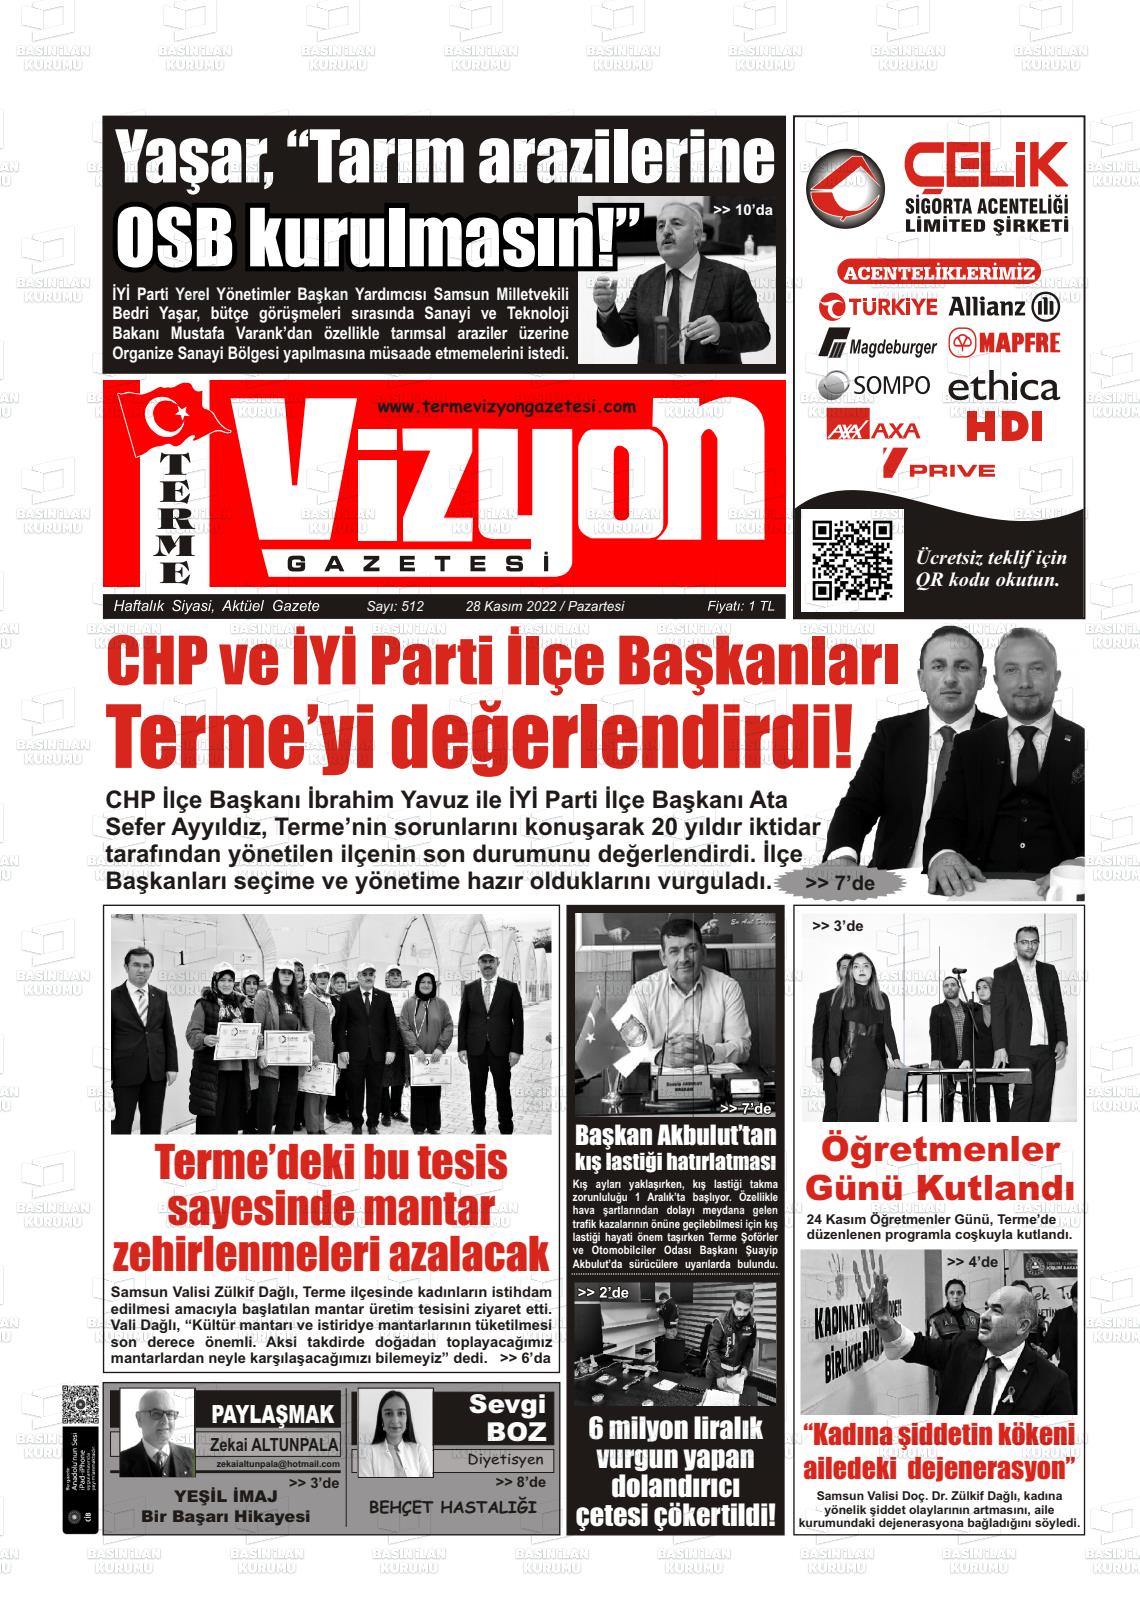 28 Kasım 2022 Terme Vizyon Gazete Manşeti